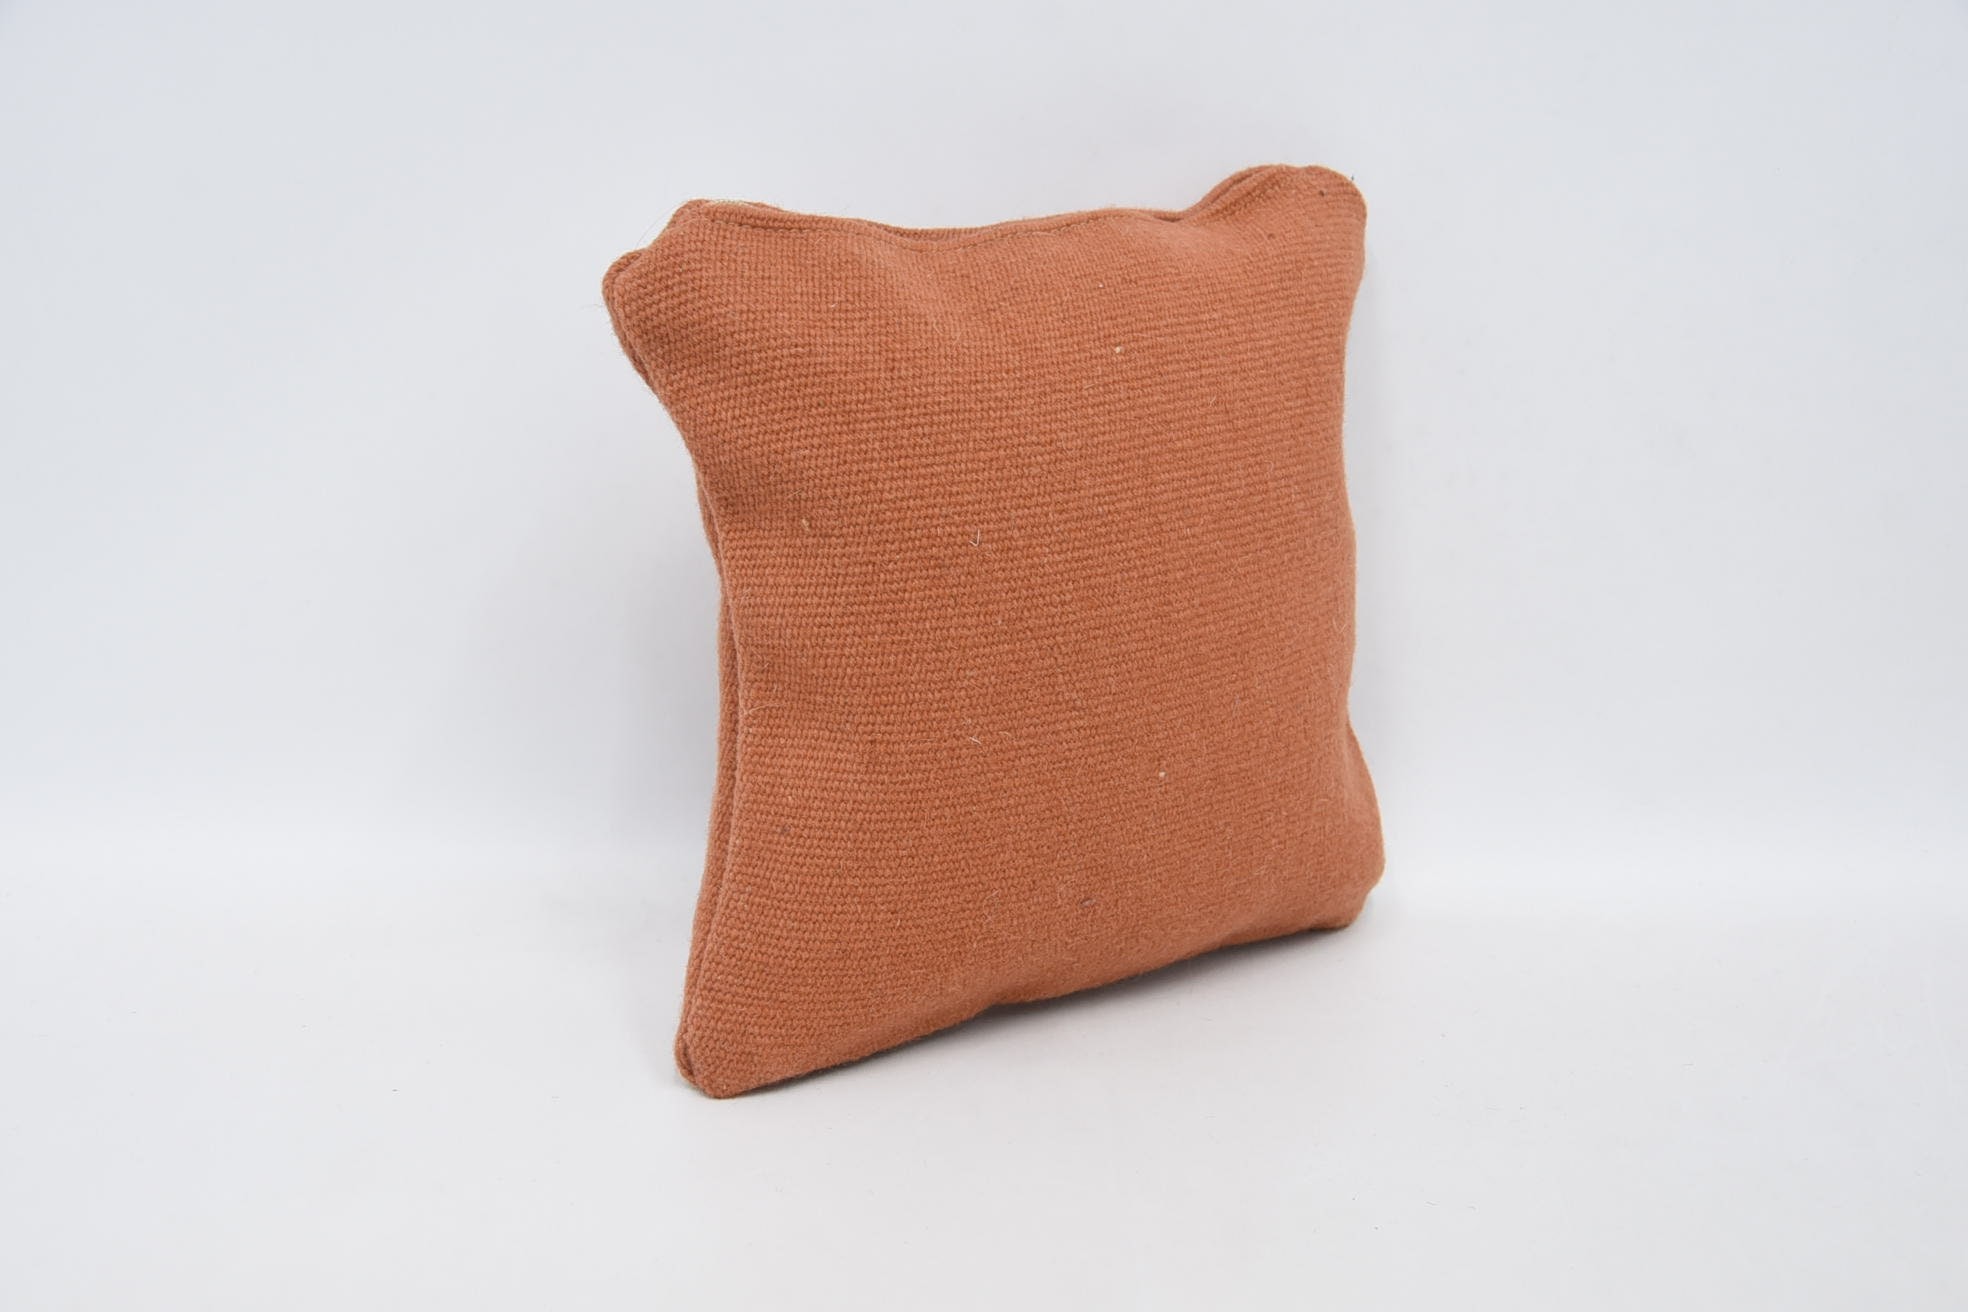 Throw Kilim Pillow, Patio Pillow Cover, 12"x12" Orange Cushion, Vintage Kilim Throw Pillow, Kilim Pillow Cover, Retro Cushion Case